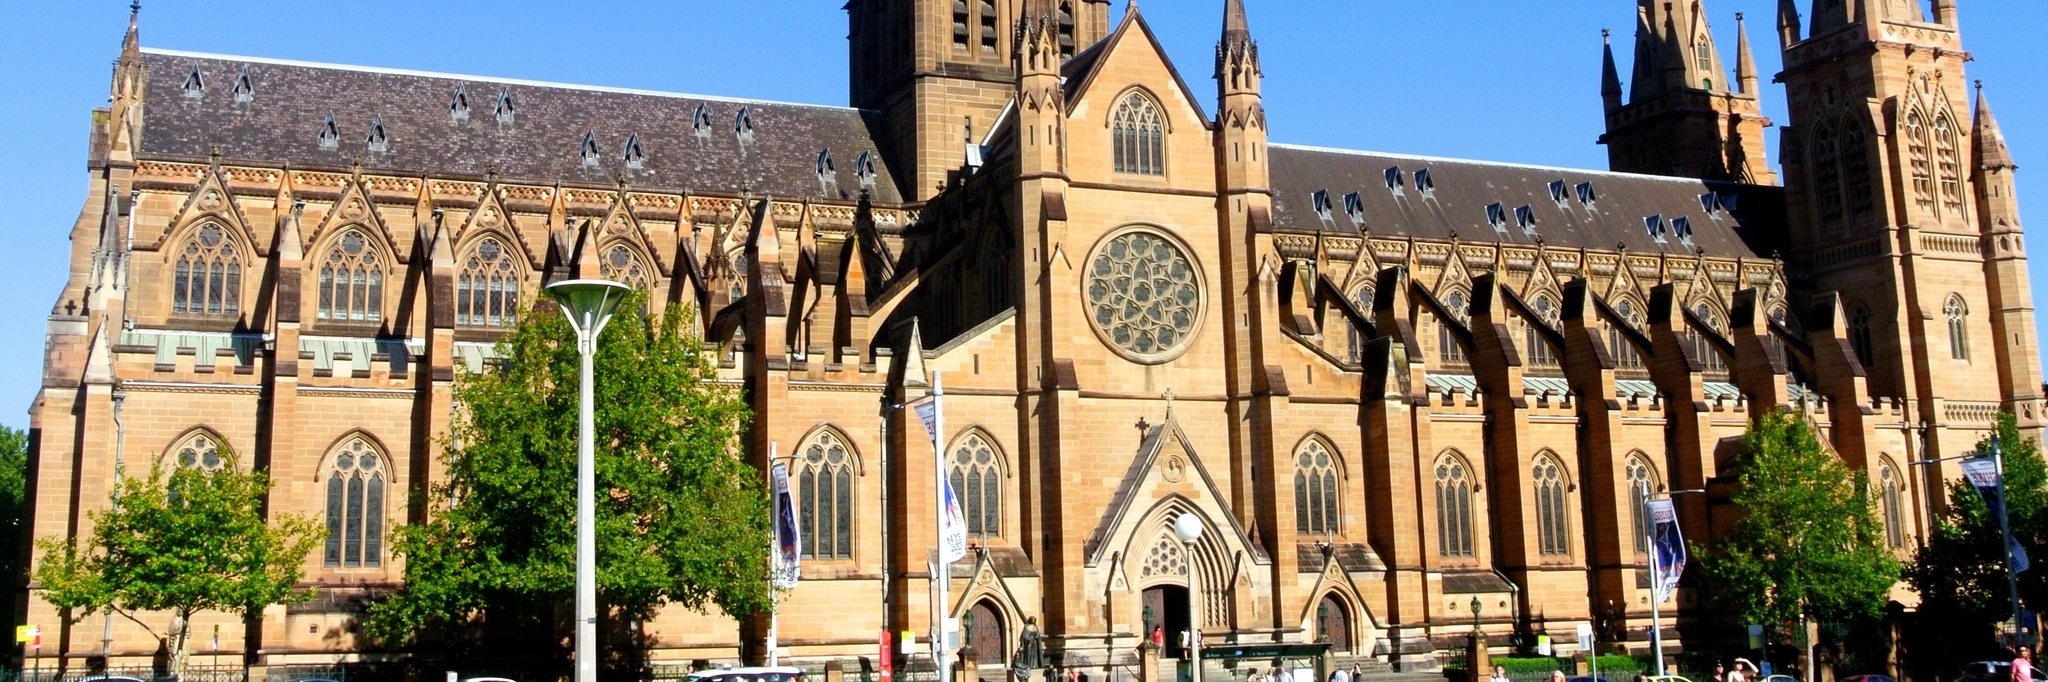 Nhà Thờ Đức Bà Sydney (St Mary's Cathedral),...